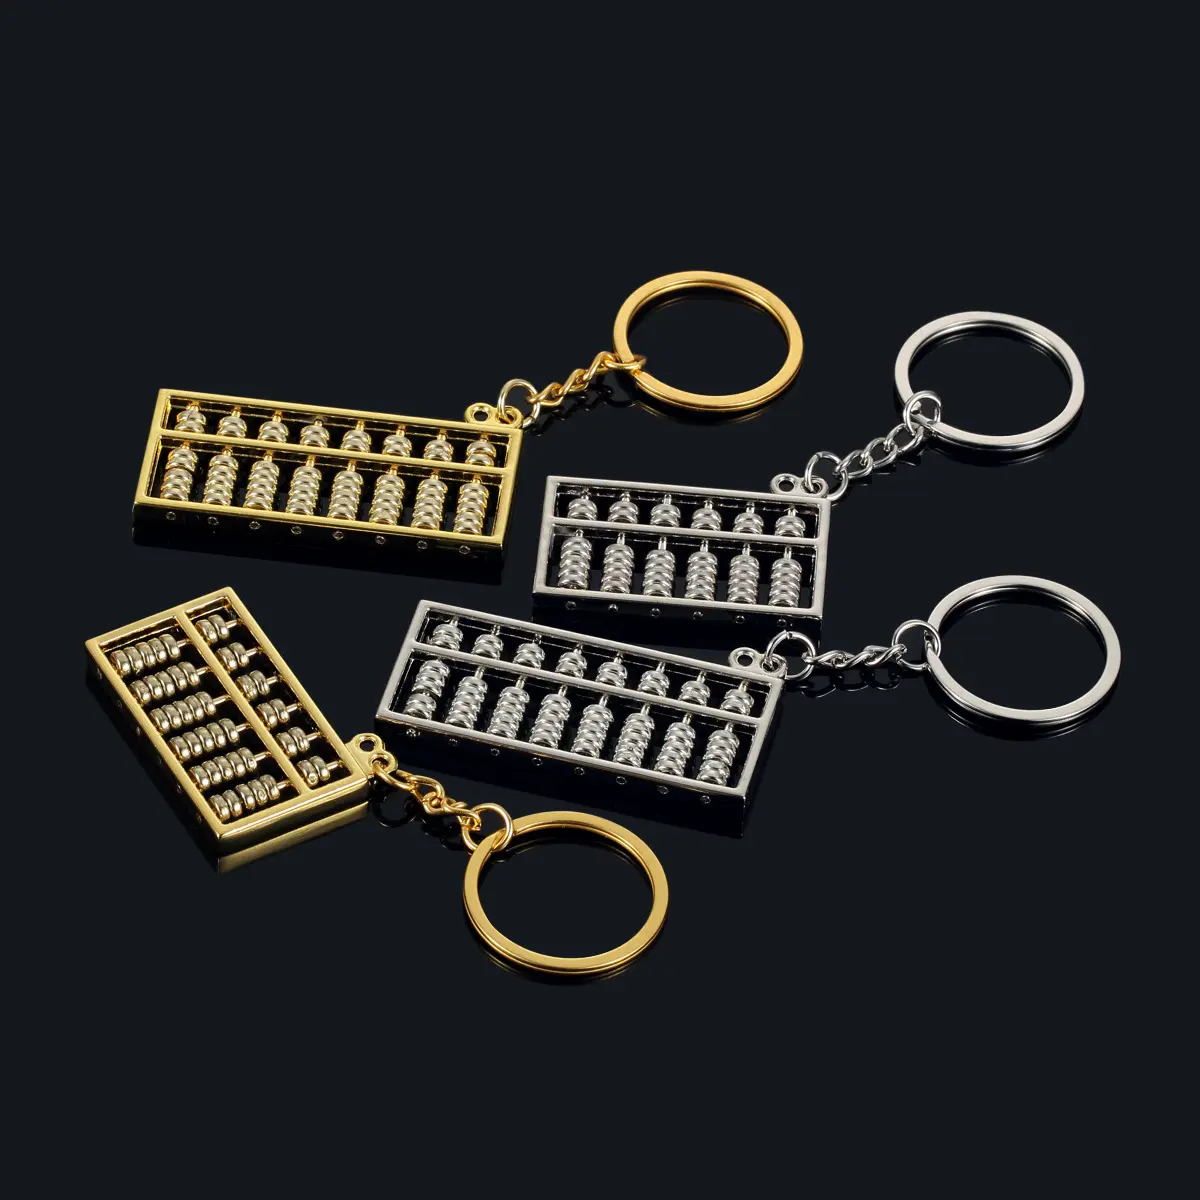 Cadre de comptage Abacus outil spécial 8 6 rangées porte-clés chinois antique calculatrice classique chaîne-clé de comptage